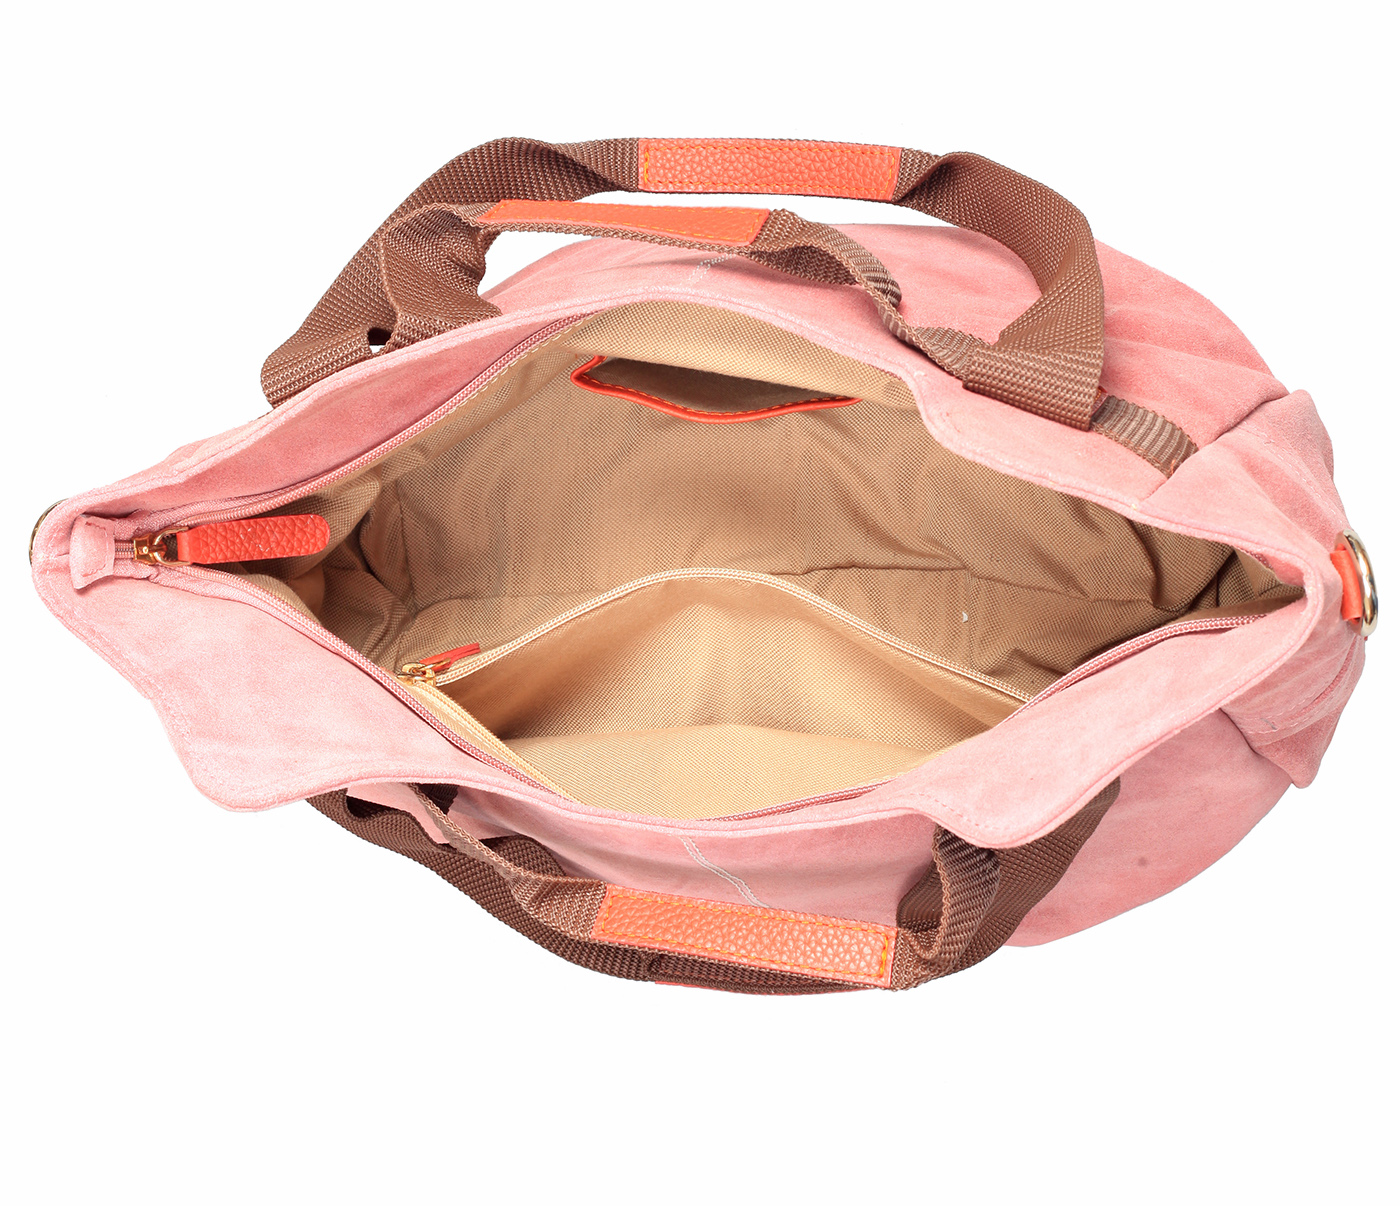 B857-Crisanta-Semi casual bag in Genuine Leather - Pink.